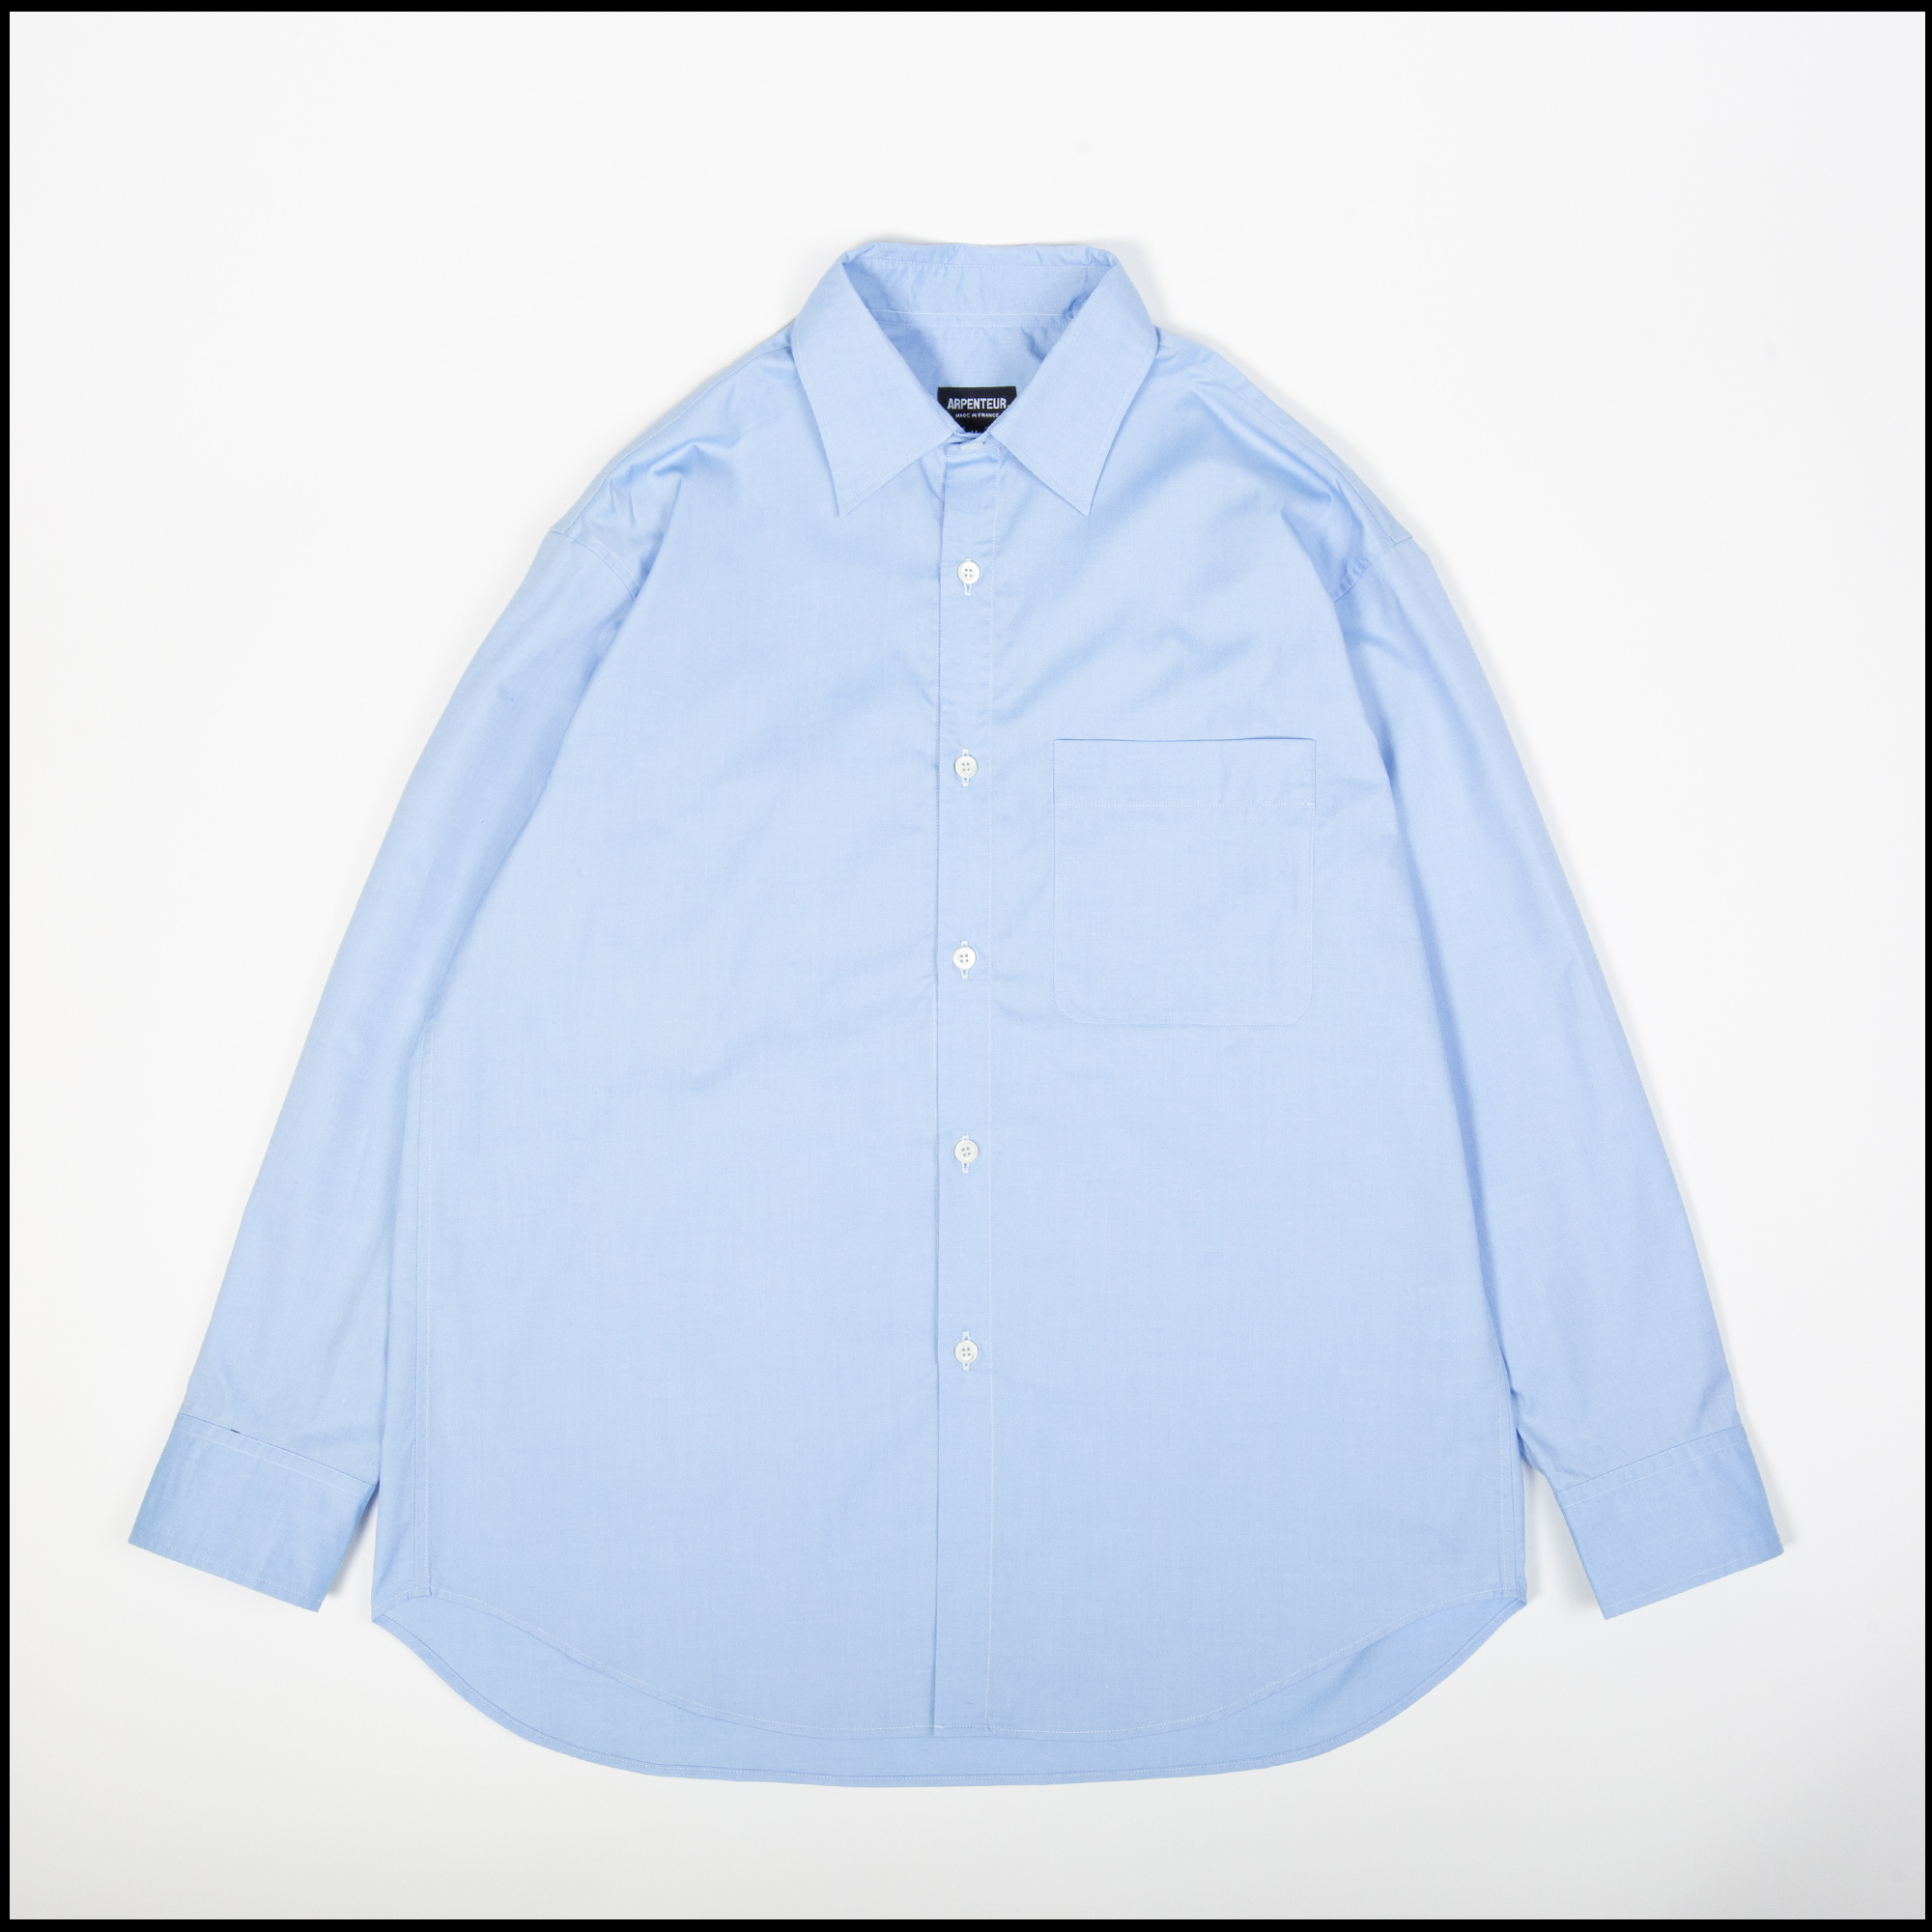 DORIS shirt in Light blue color by Arpenteur